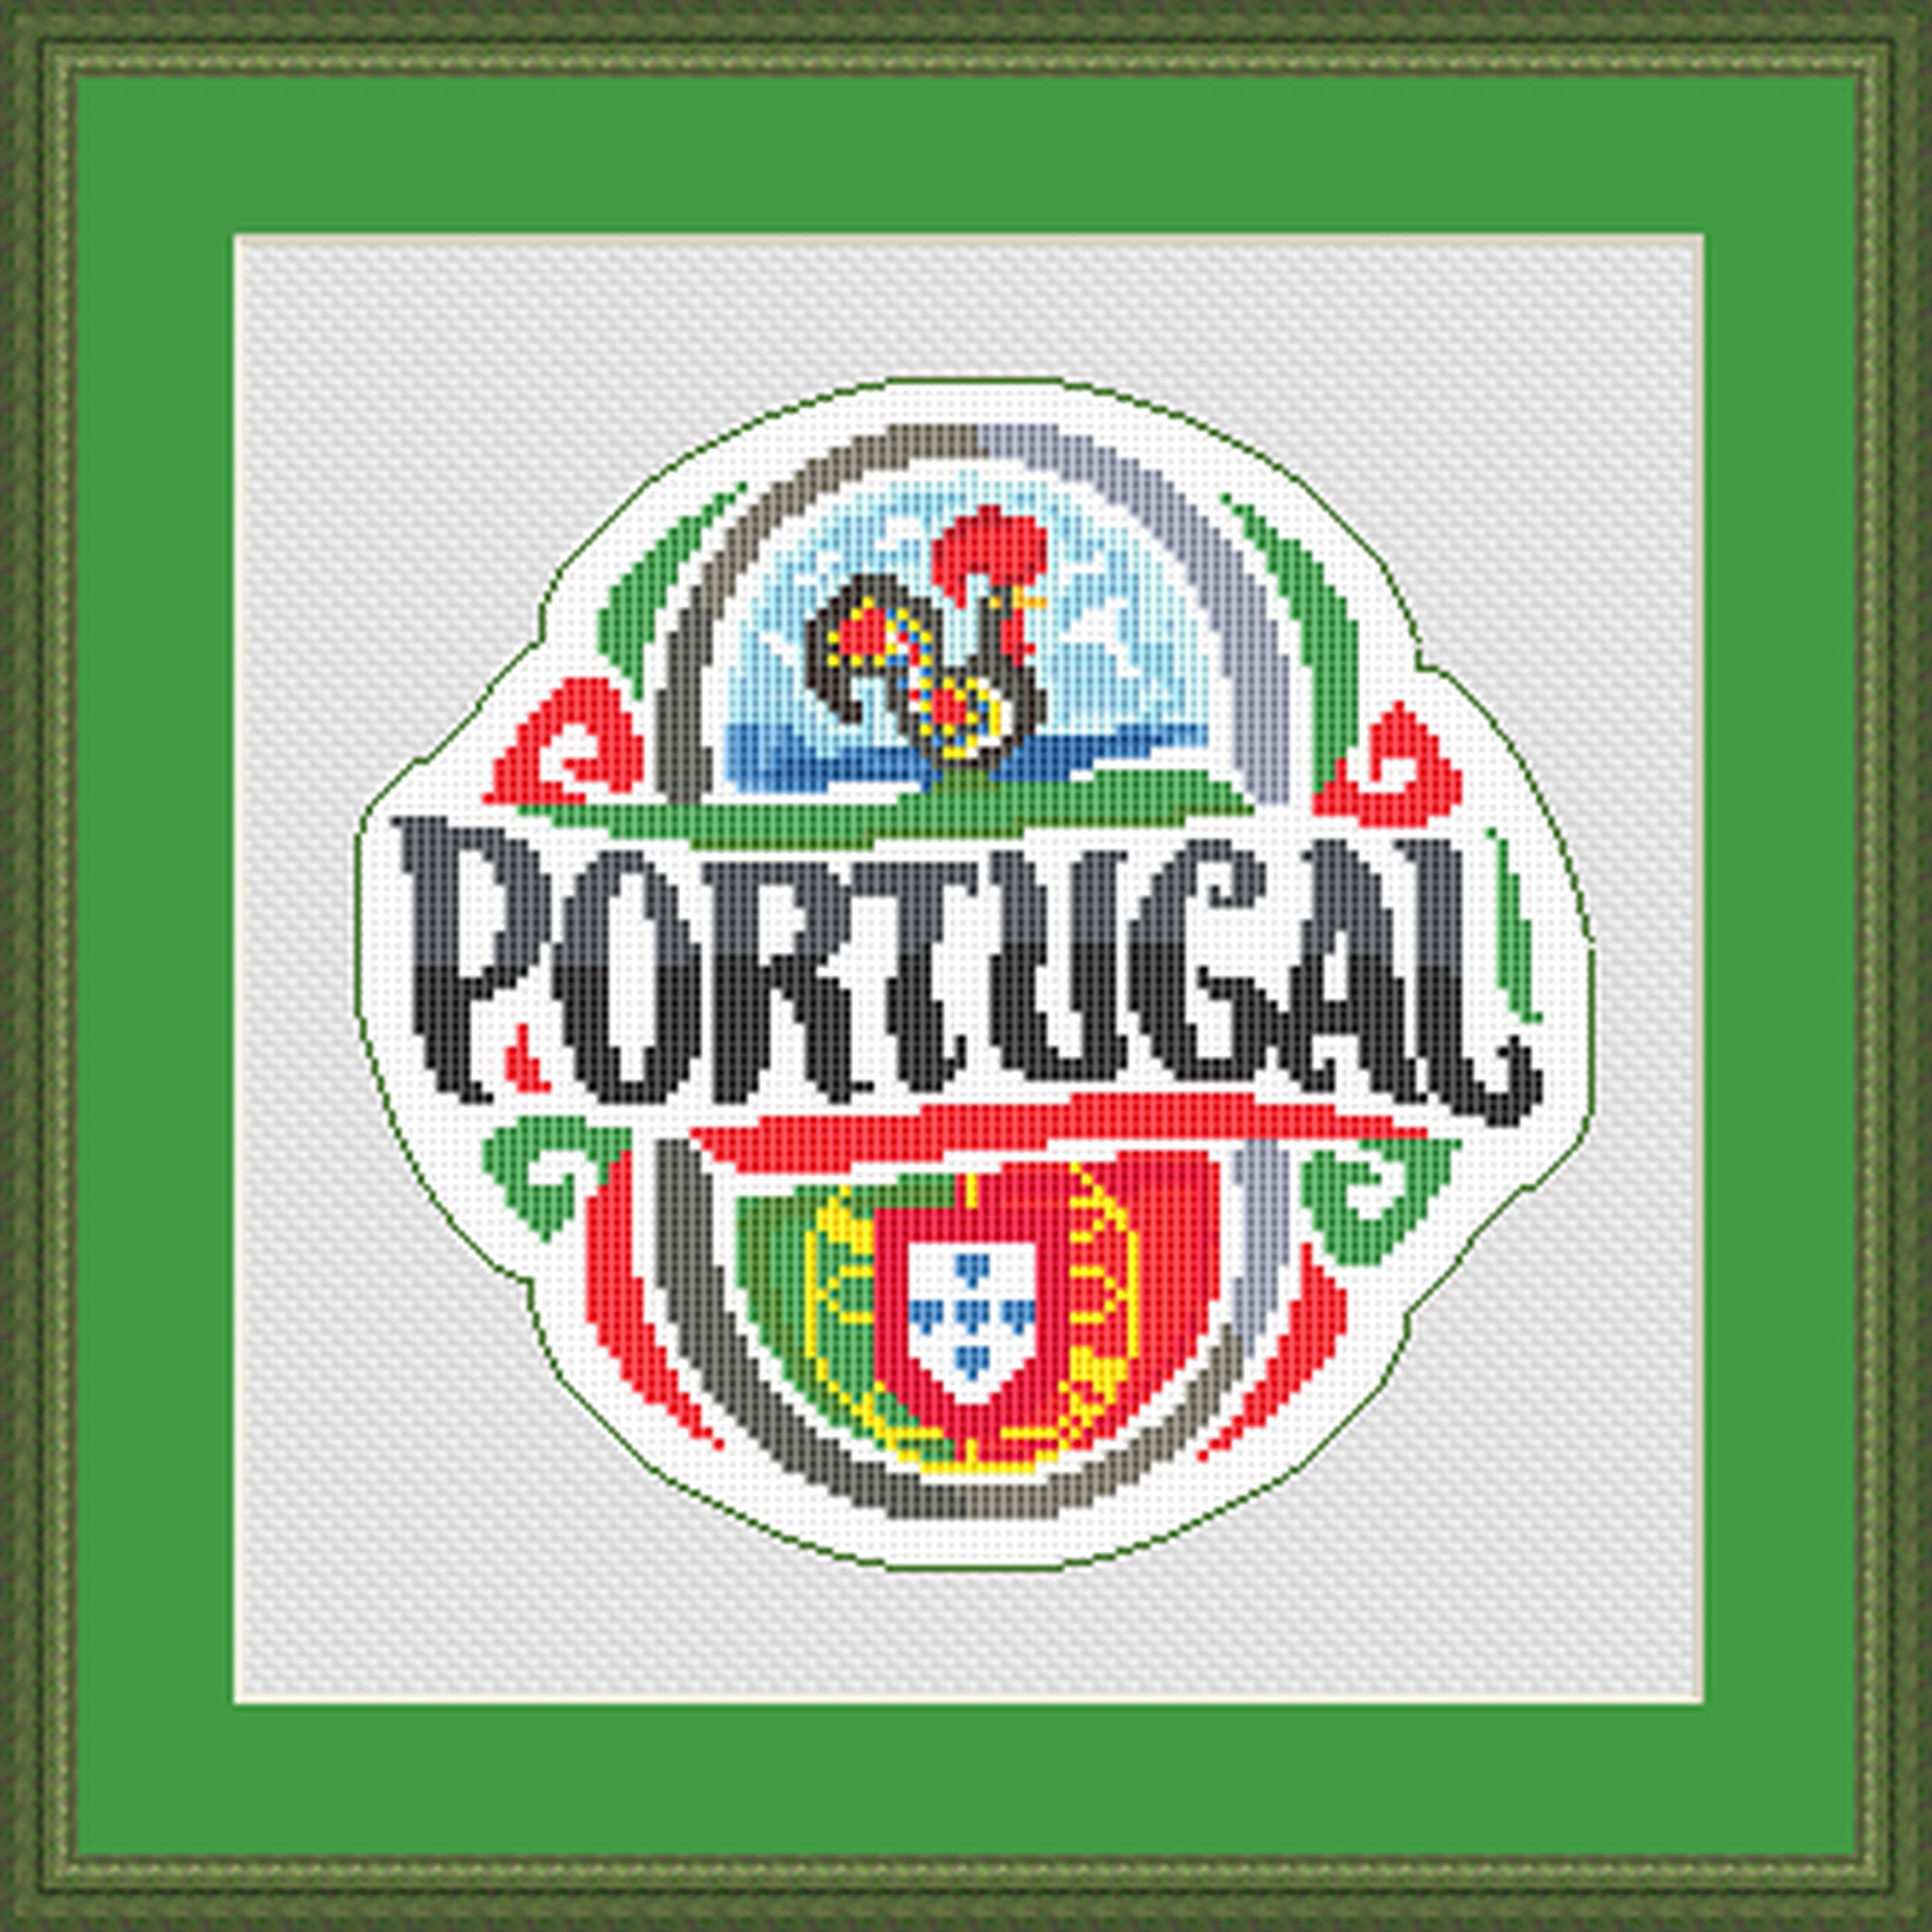 Portuguese Fish Cross Stitch Pattern - Stitched Modern